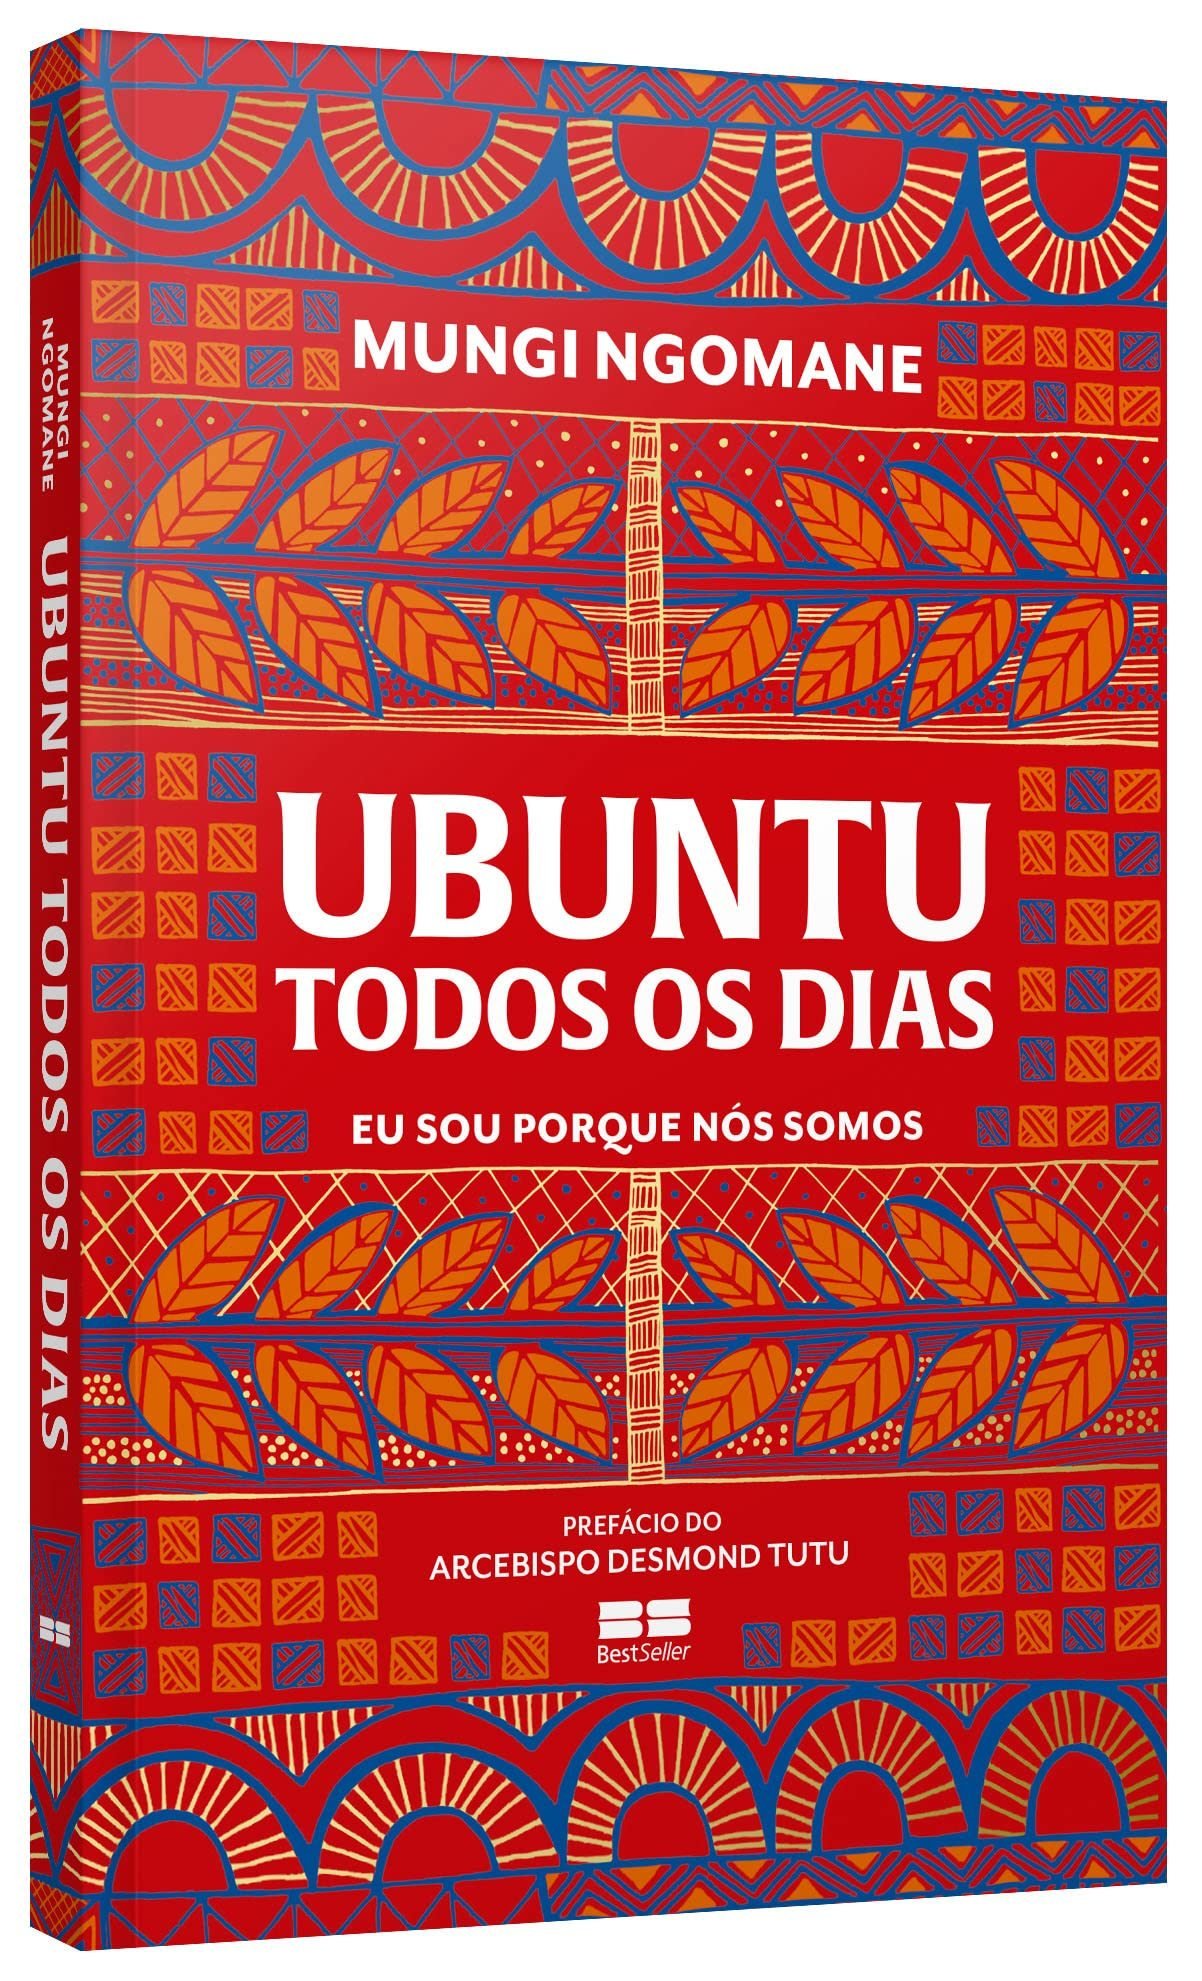 capa do livro Ubuntu todos os dias